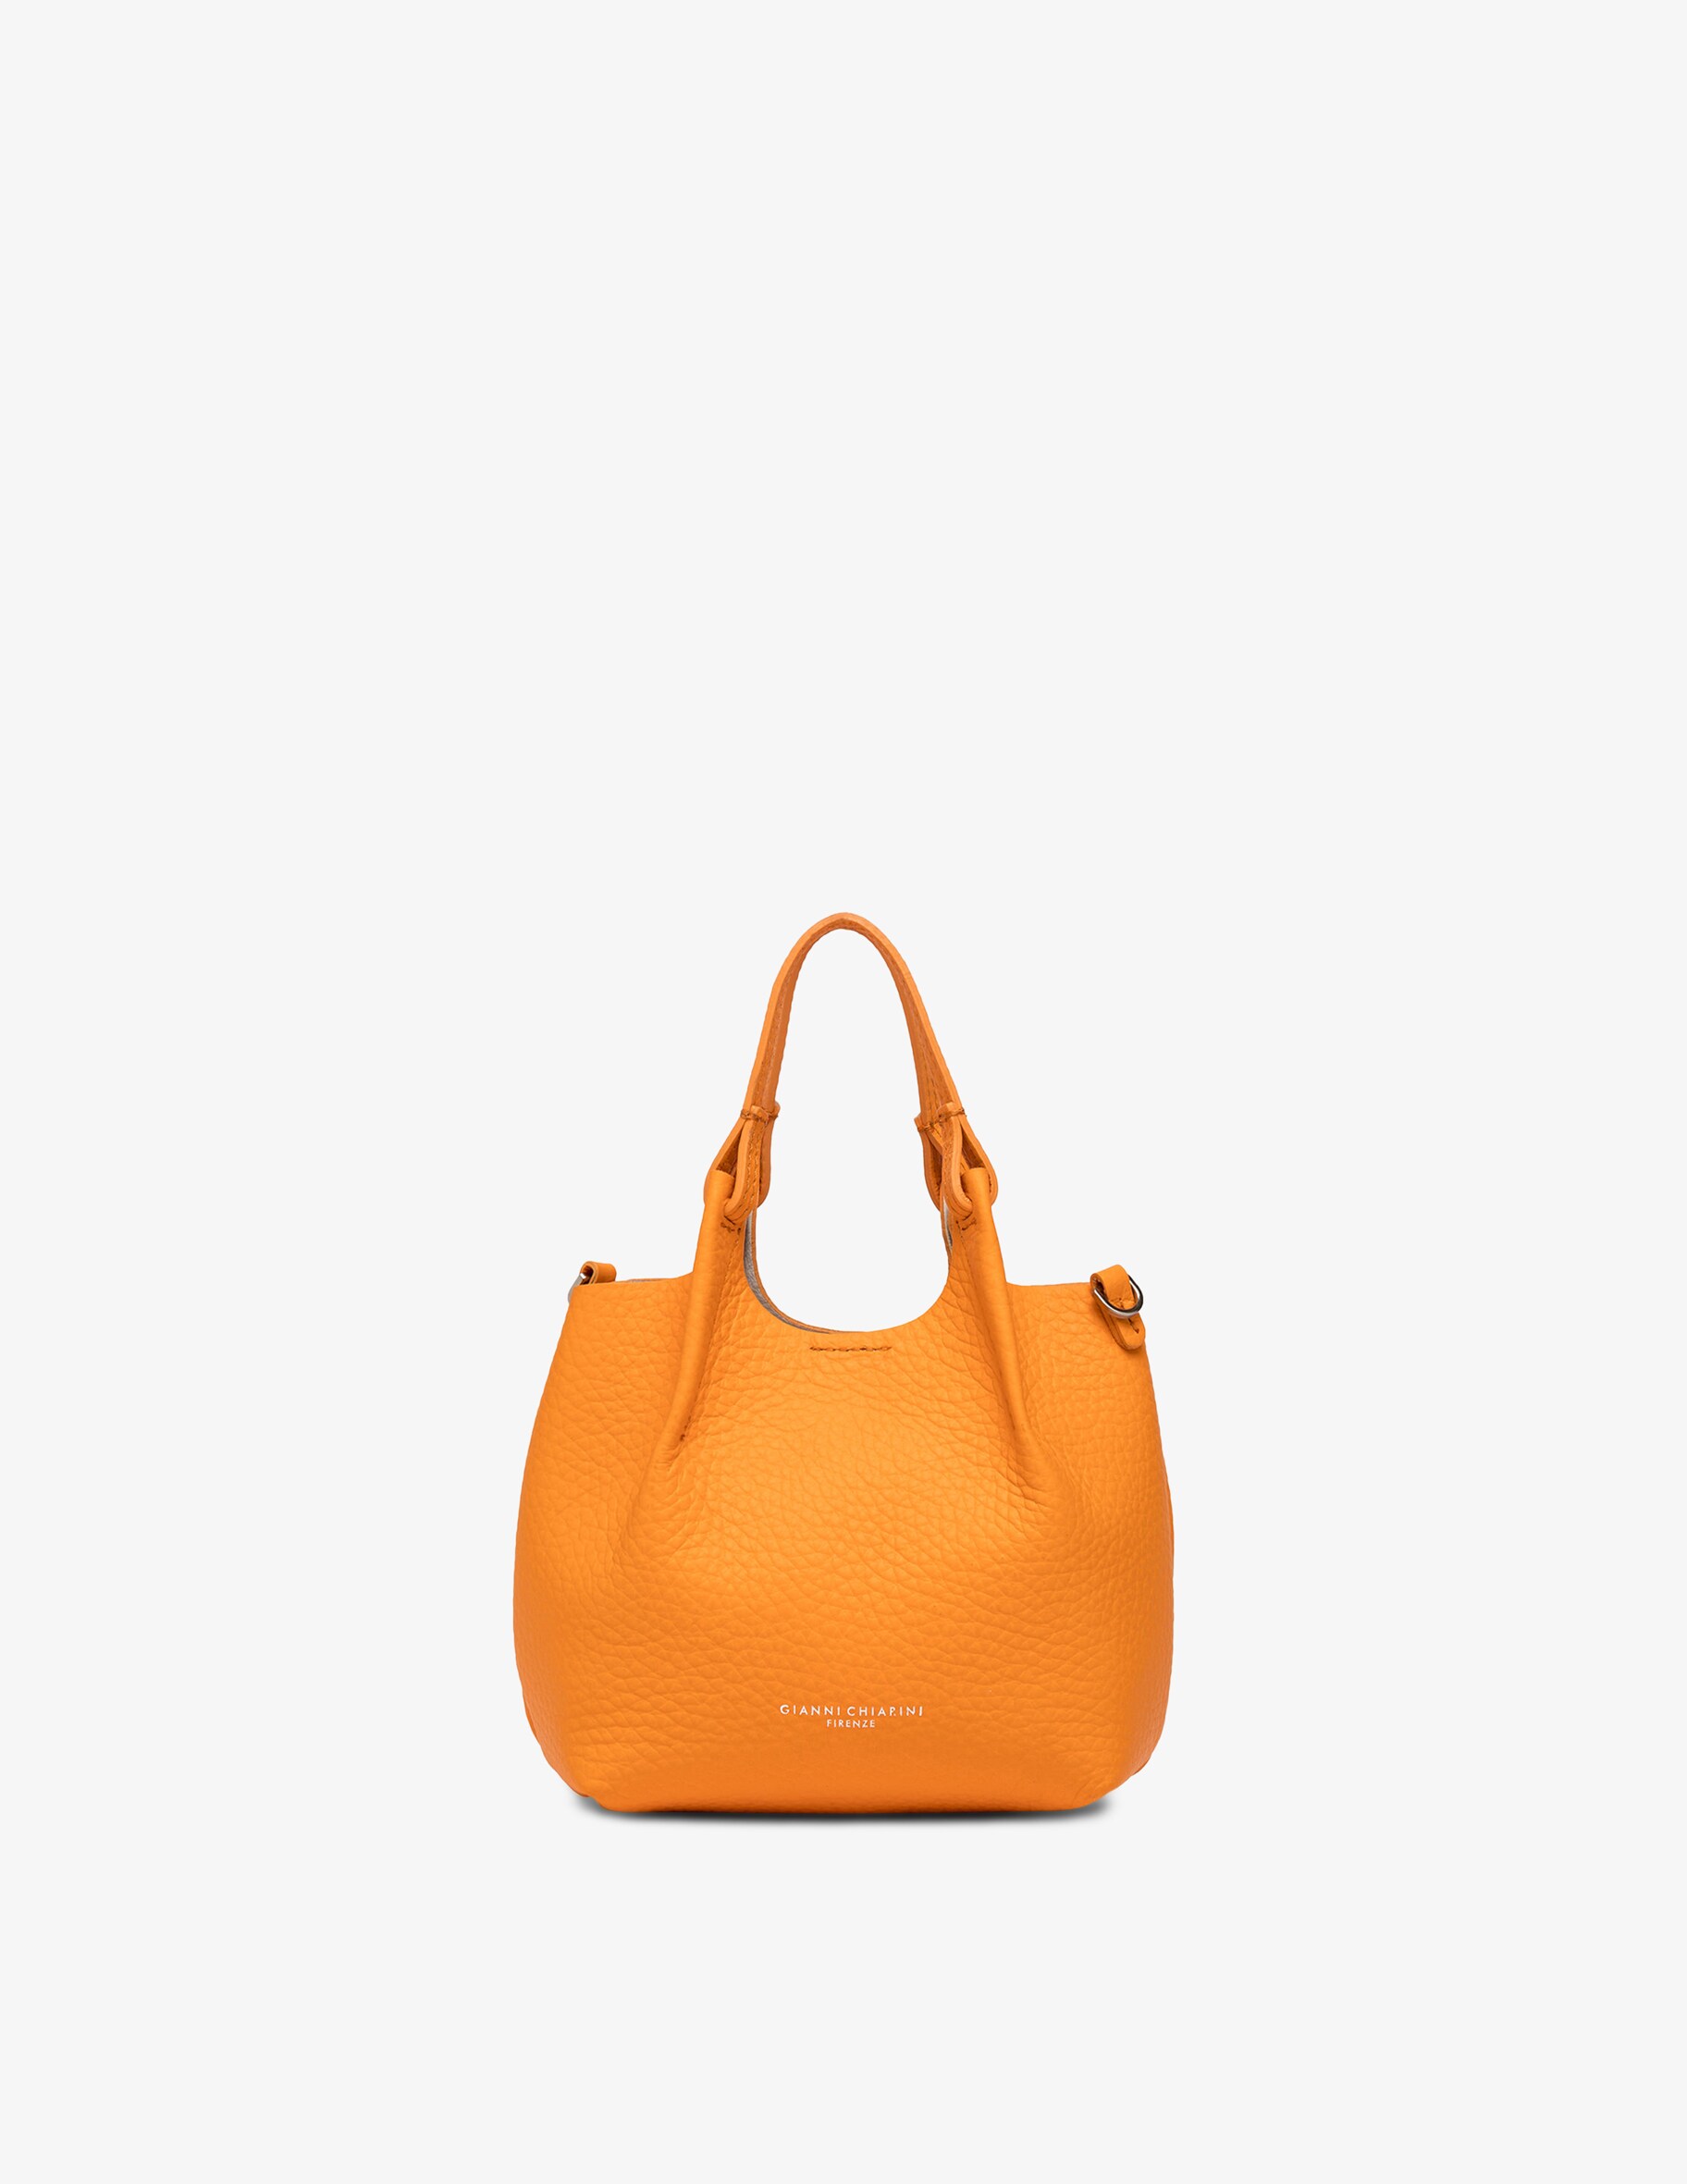 Миниатюрная сумка через плечо Dua Gianni Chiarini Firenze, оранжевый сумка superlight gianni chiarini цвет natural